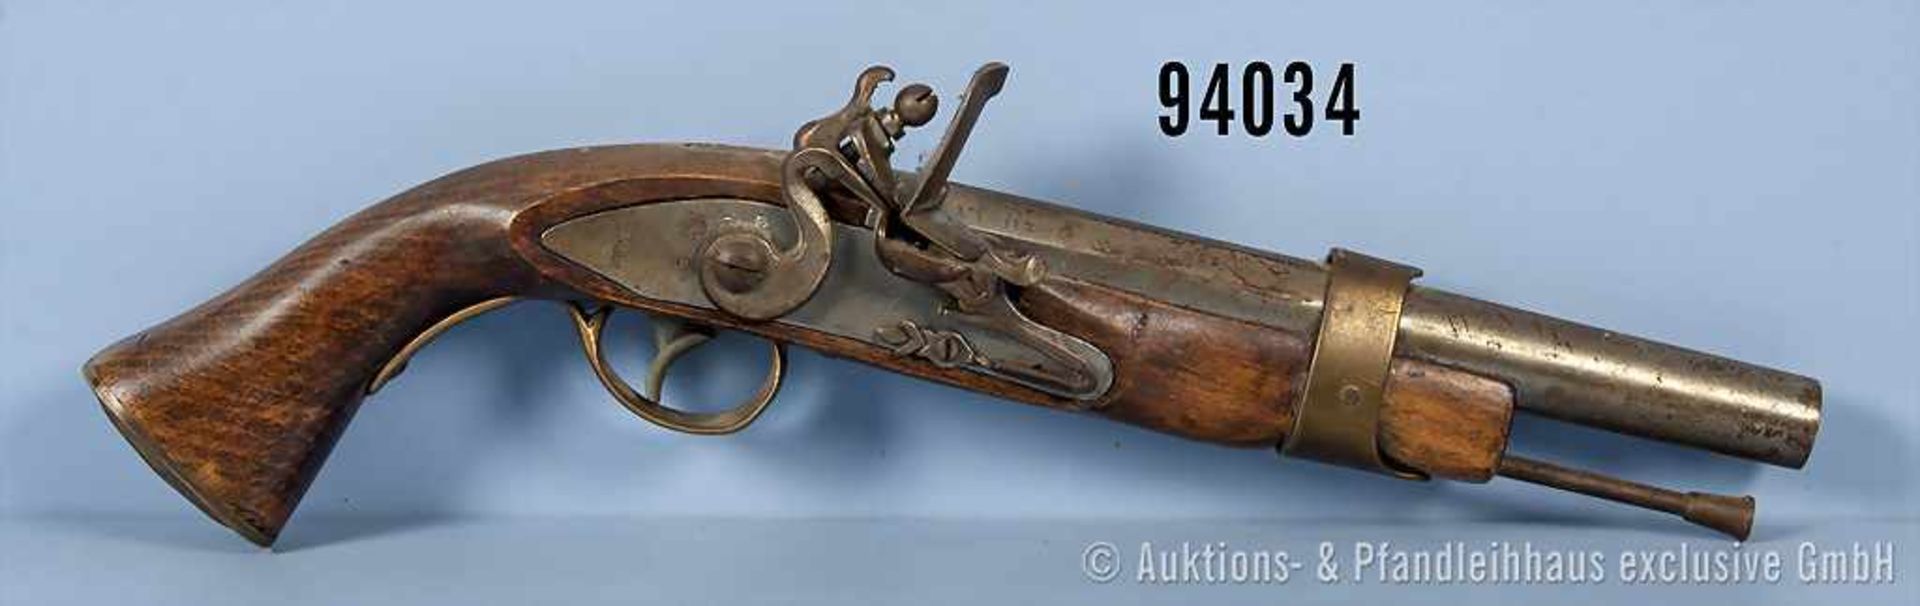 Steinschloss-Pistole, Sammler-Anfertigung, von kantig in rund übergehender glatter Lauf, Cal. 45,